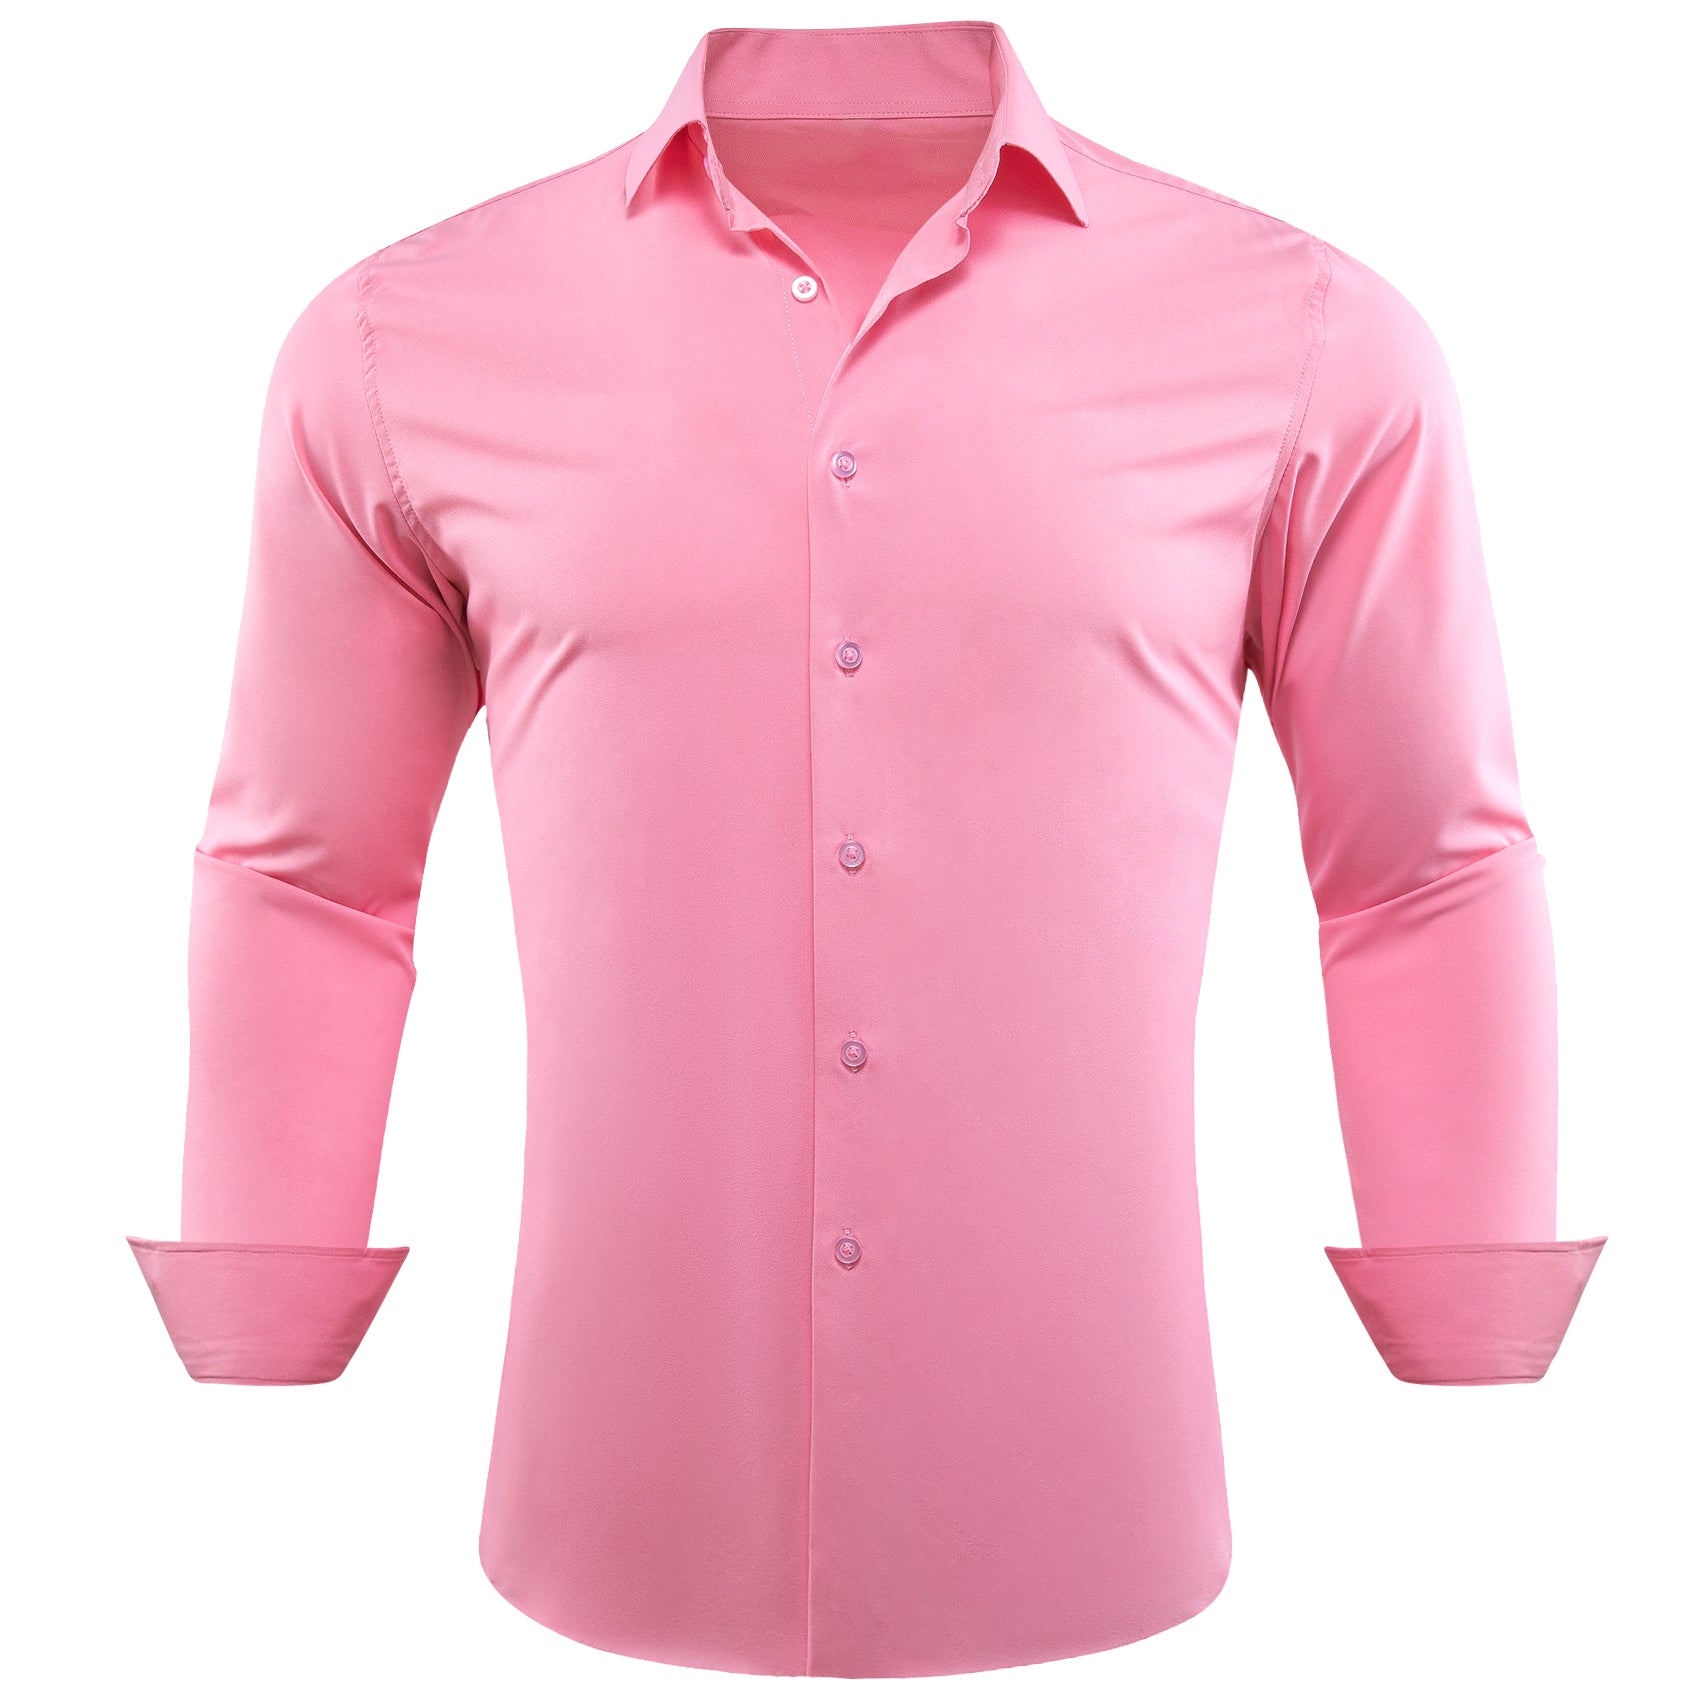 Barry.wang Button Down Shirt Light Pink Solid Silk Men's Long Sleeve Shirt